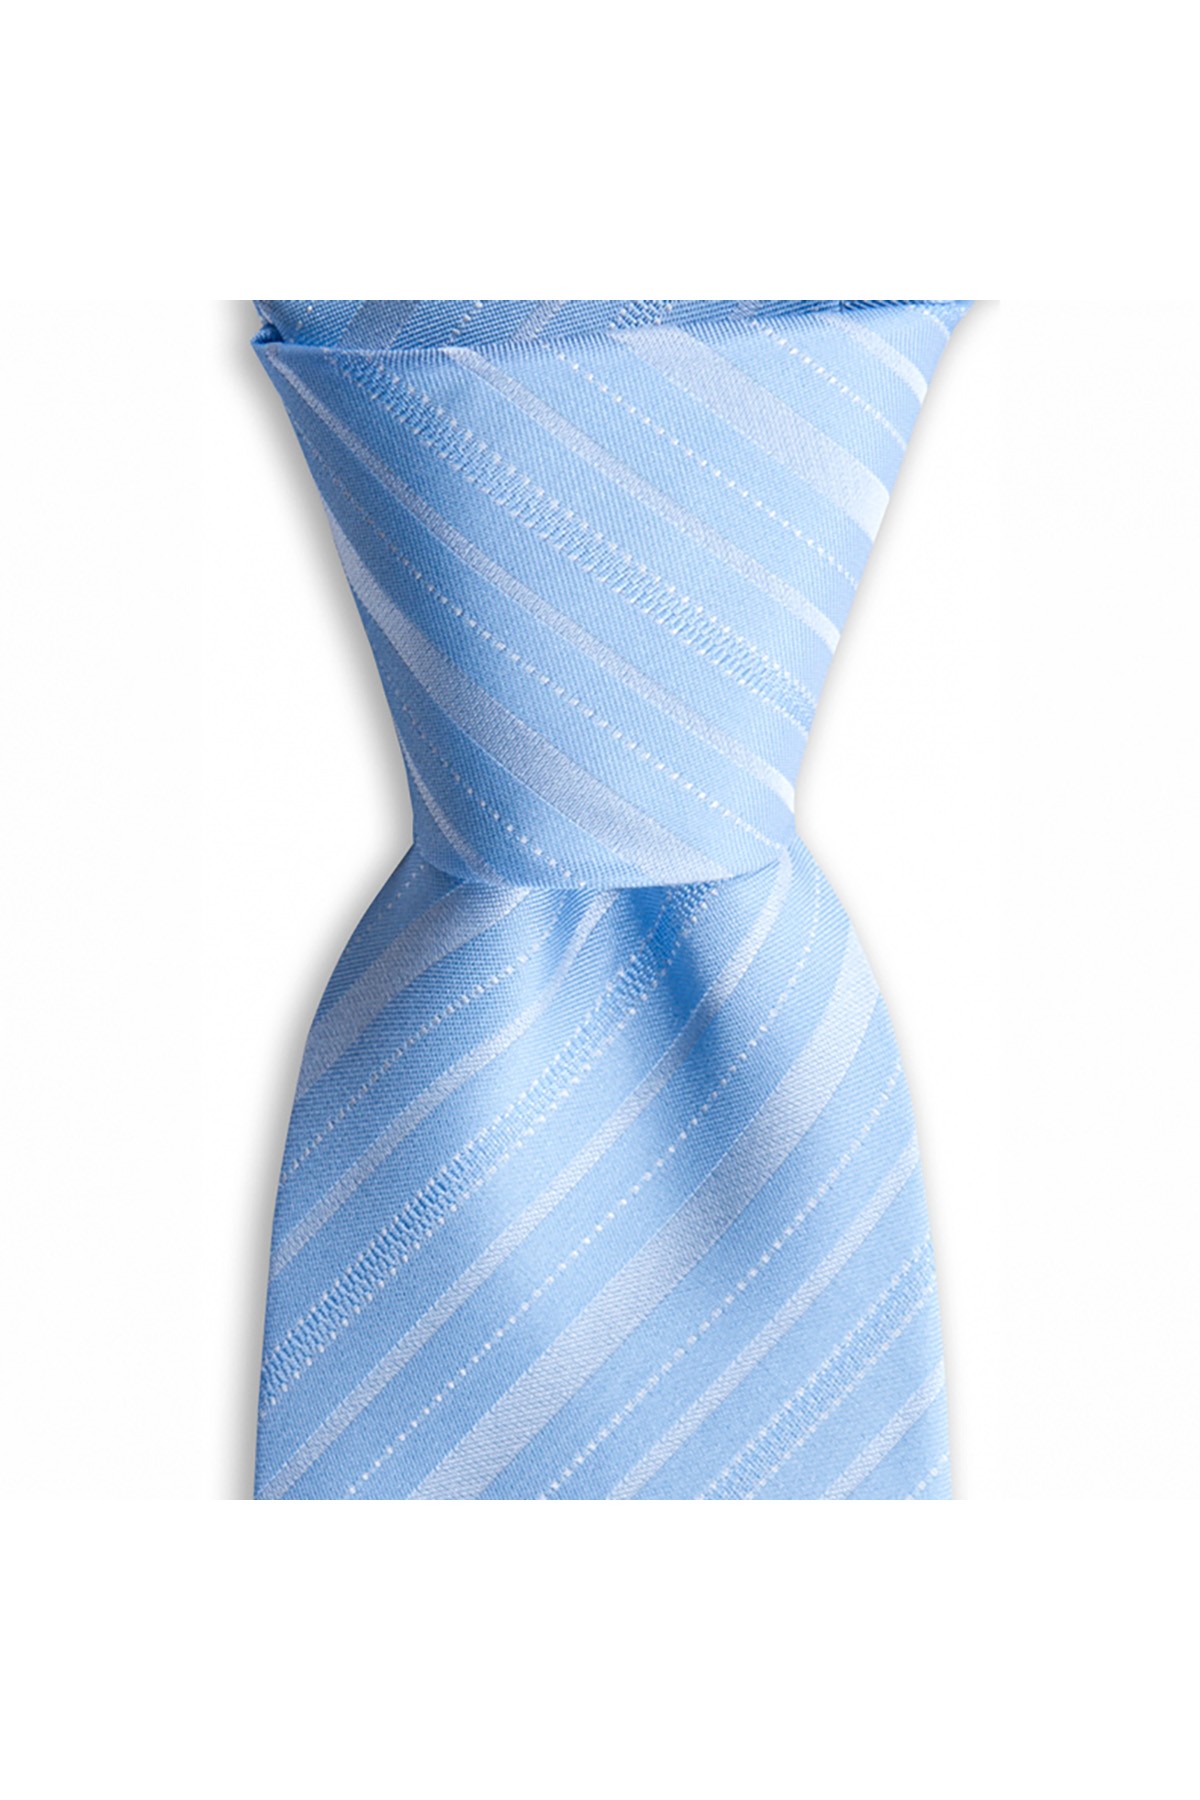 İnce çizgili 8 cm genişliğinde klasik ipek kravat - Açık mavi